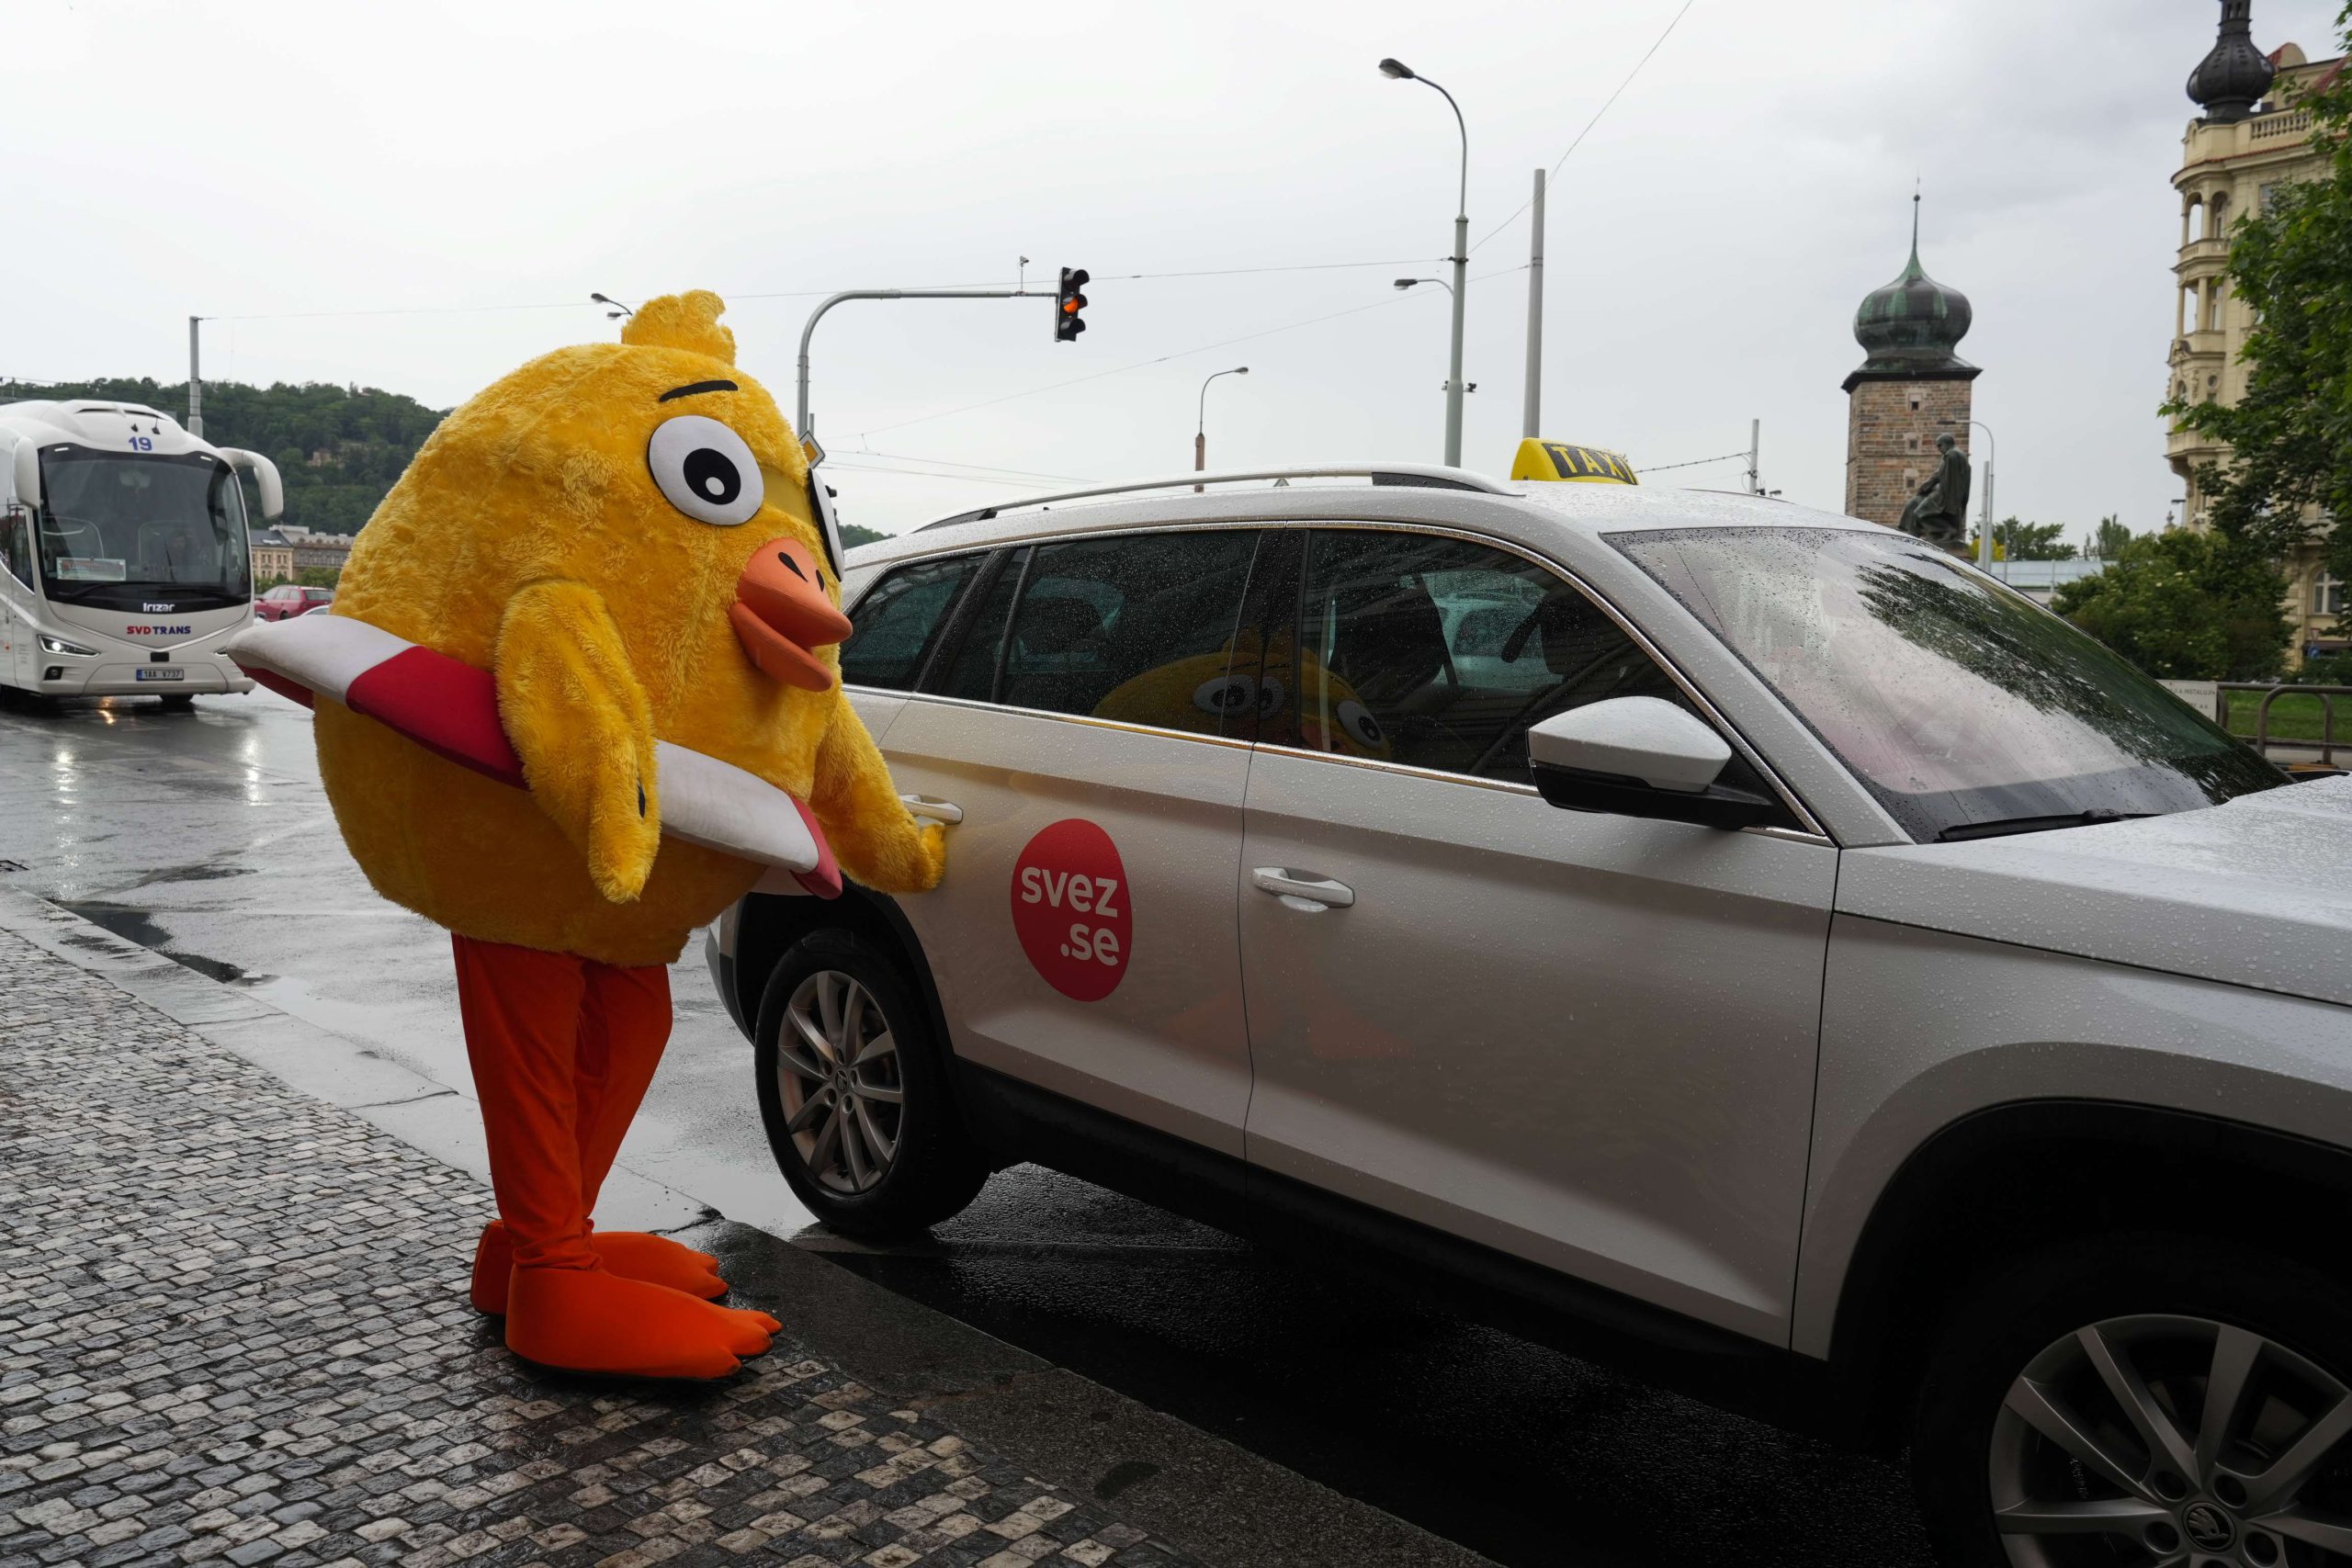 Taxislužba Svez.se z každé své jízdy podpoří NROS a charitativní projekt Pomozte dětem